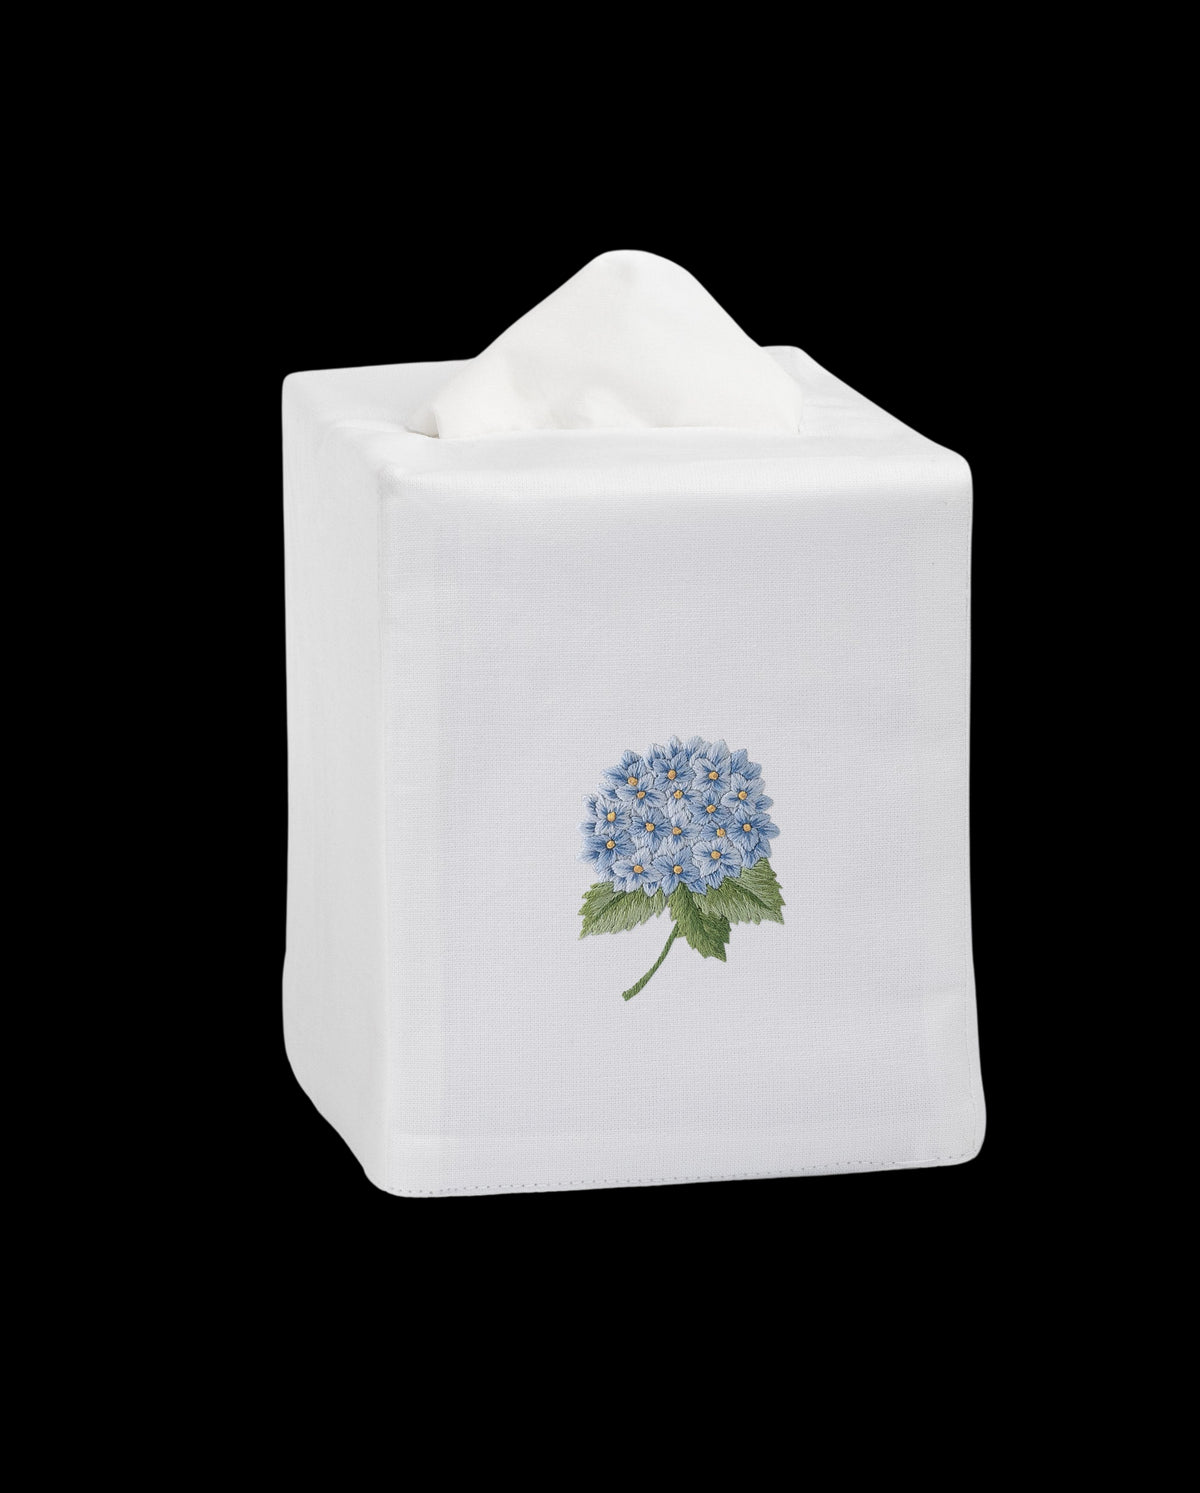 Hydrangea Blue Tissue Box Cover